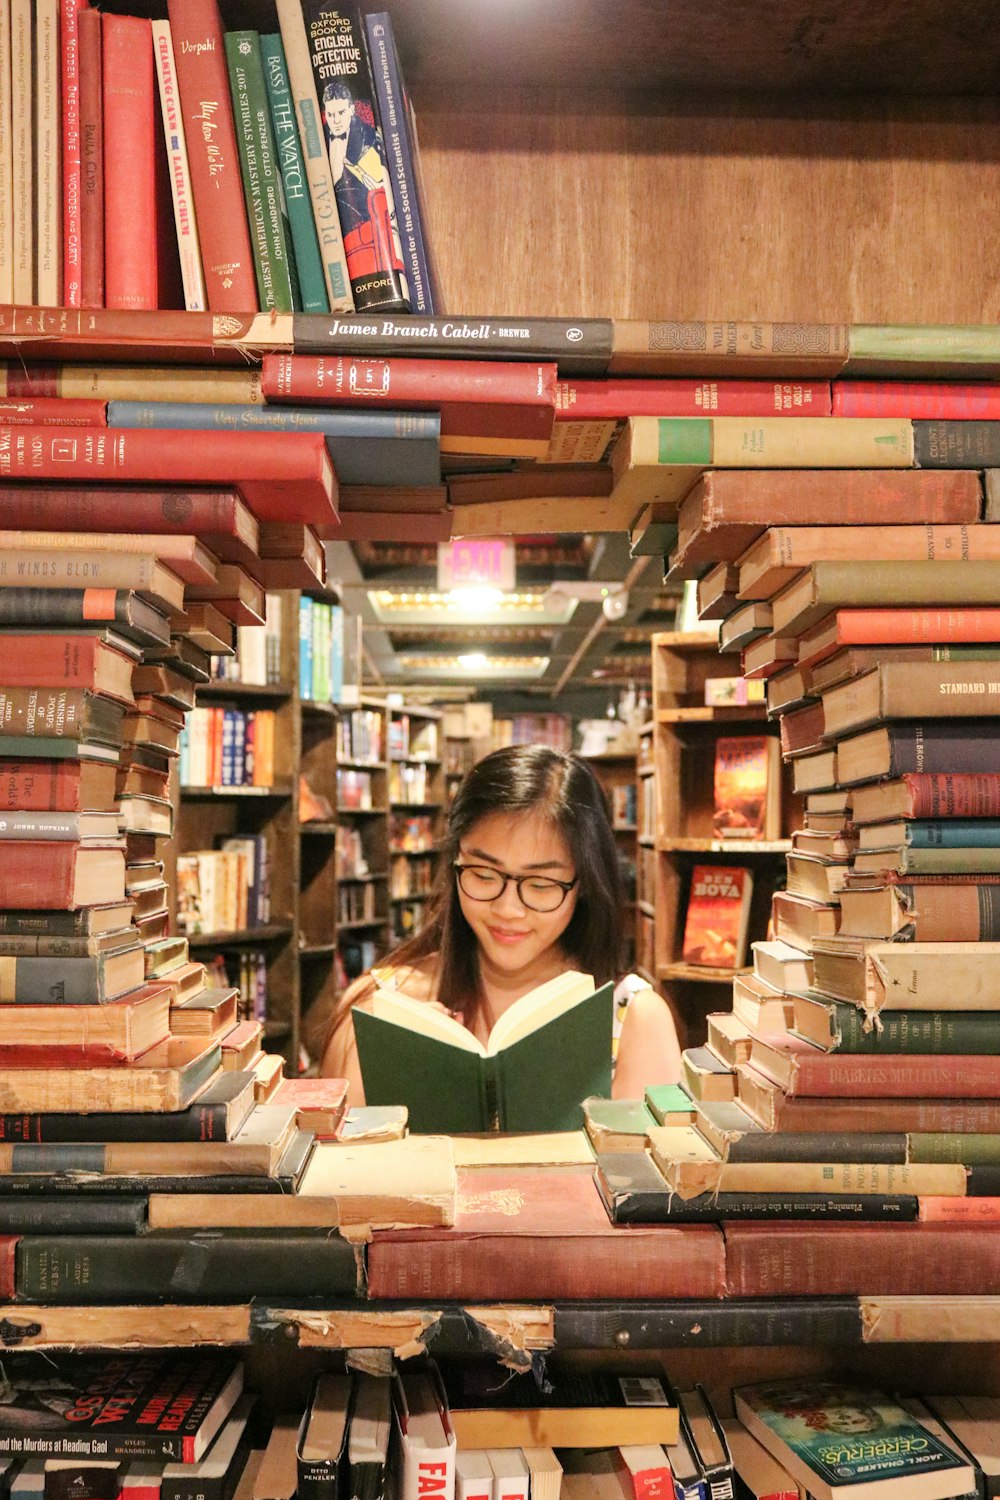 Frau im grünen Hemd sitzt auf Büchern